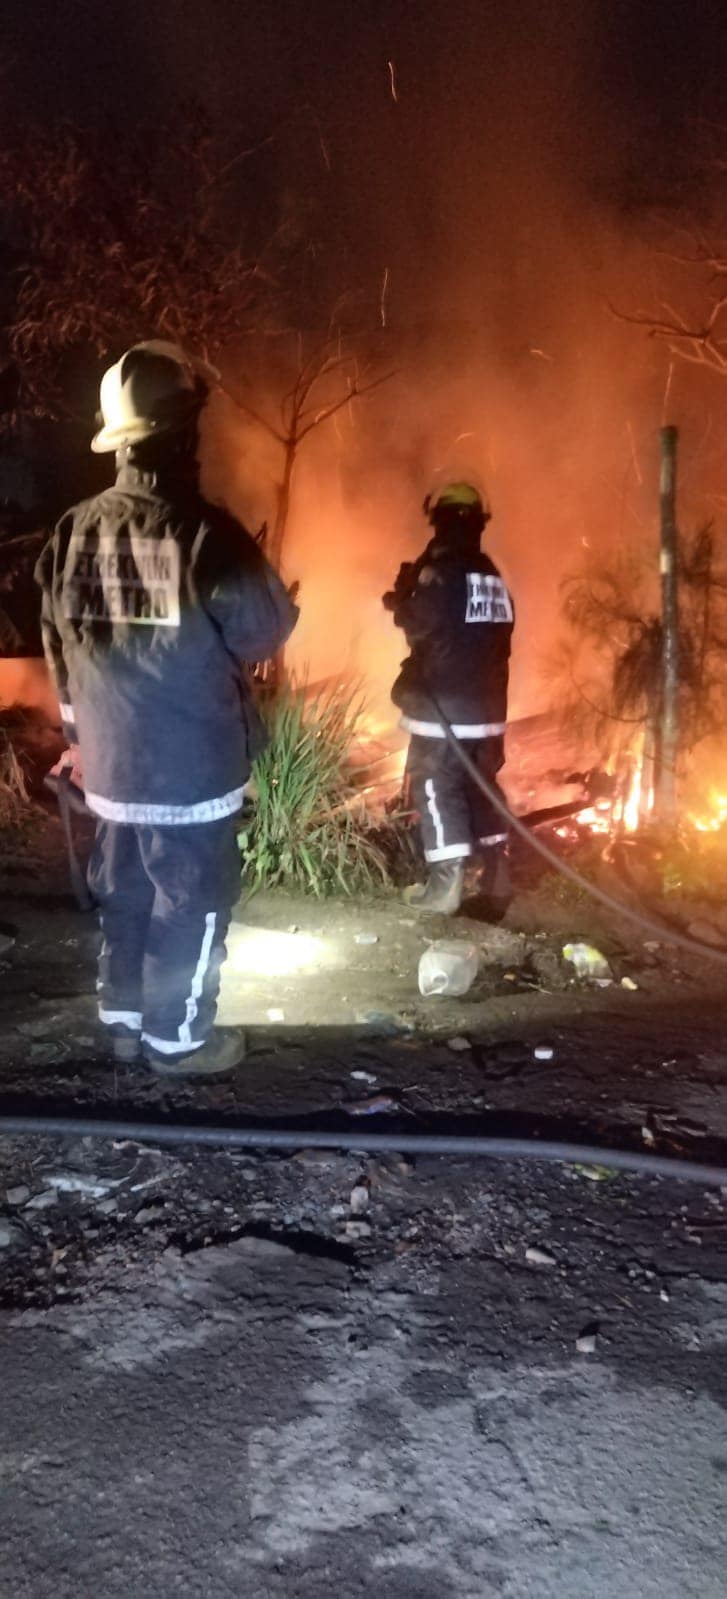 Informal Home Destroyed In Fire: Canelands - KZN